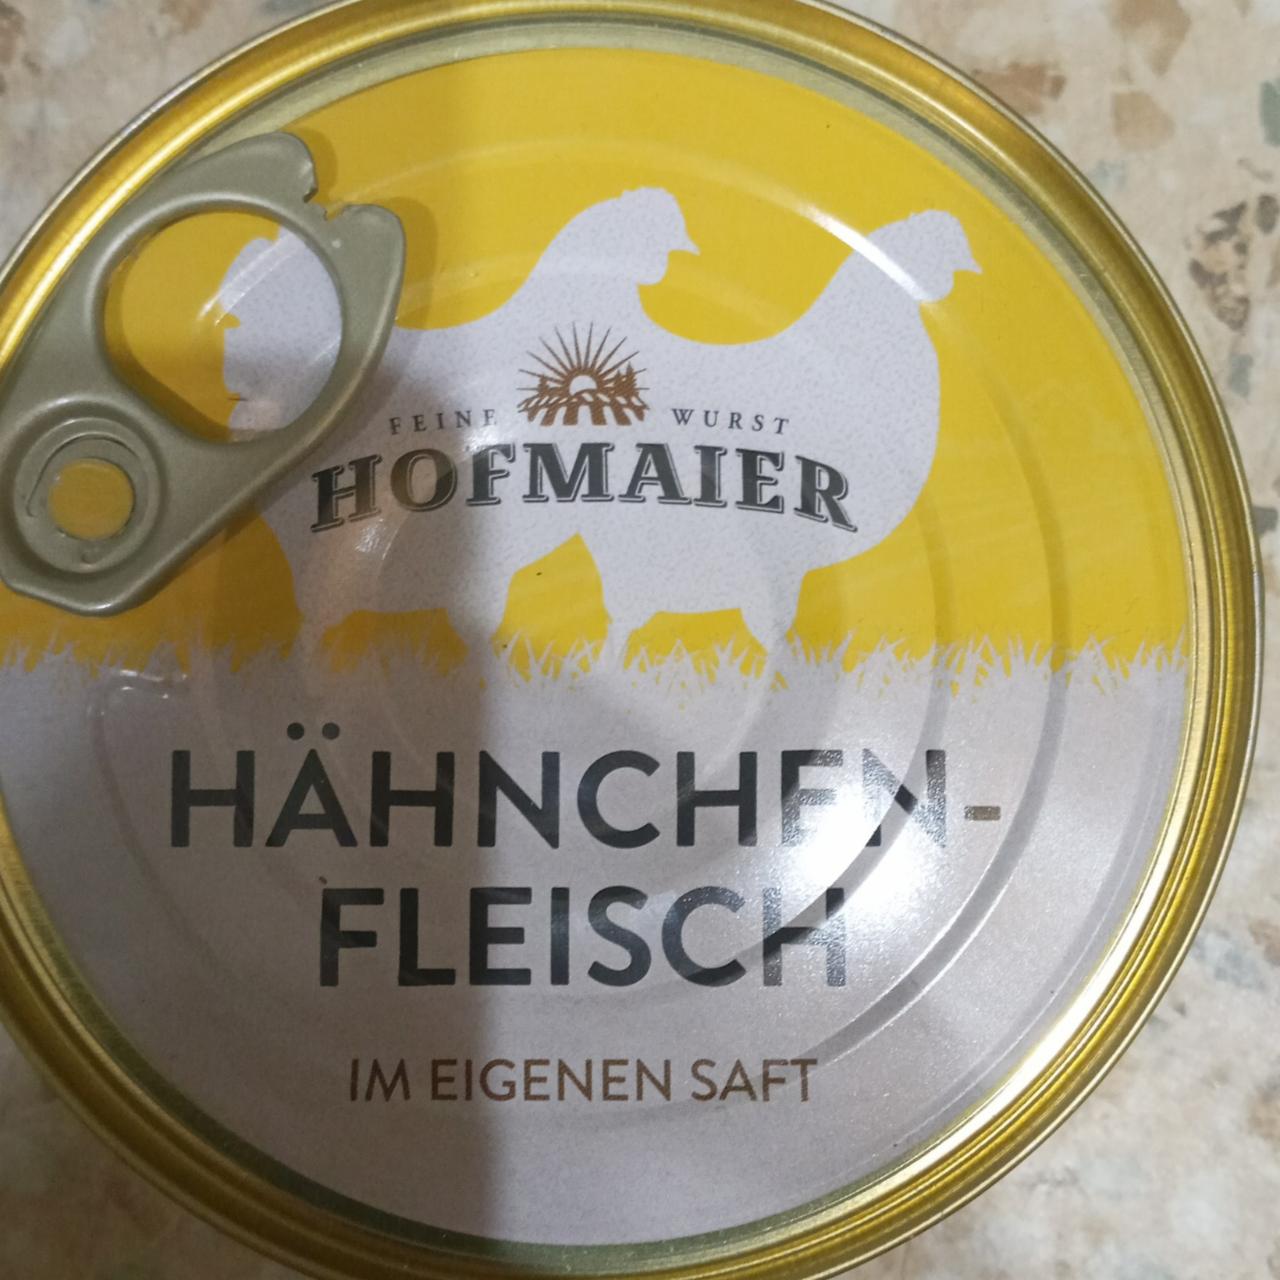 Фото - Hähnchen fleisch Hofmaier